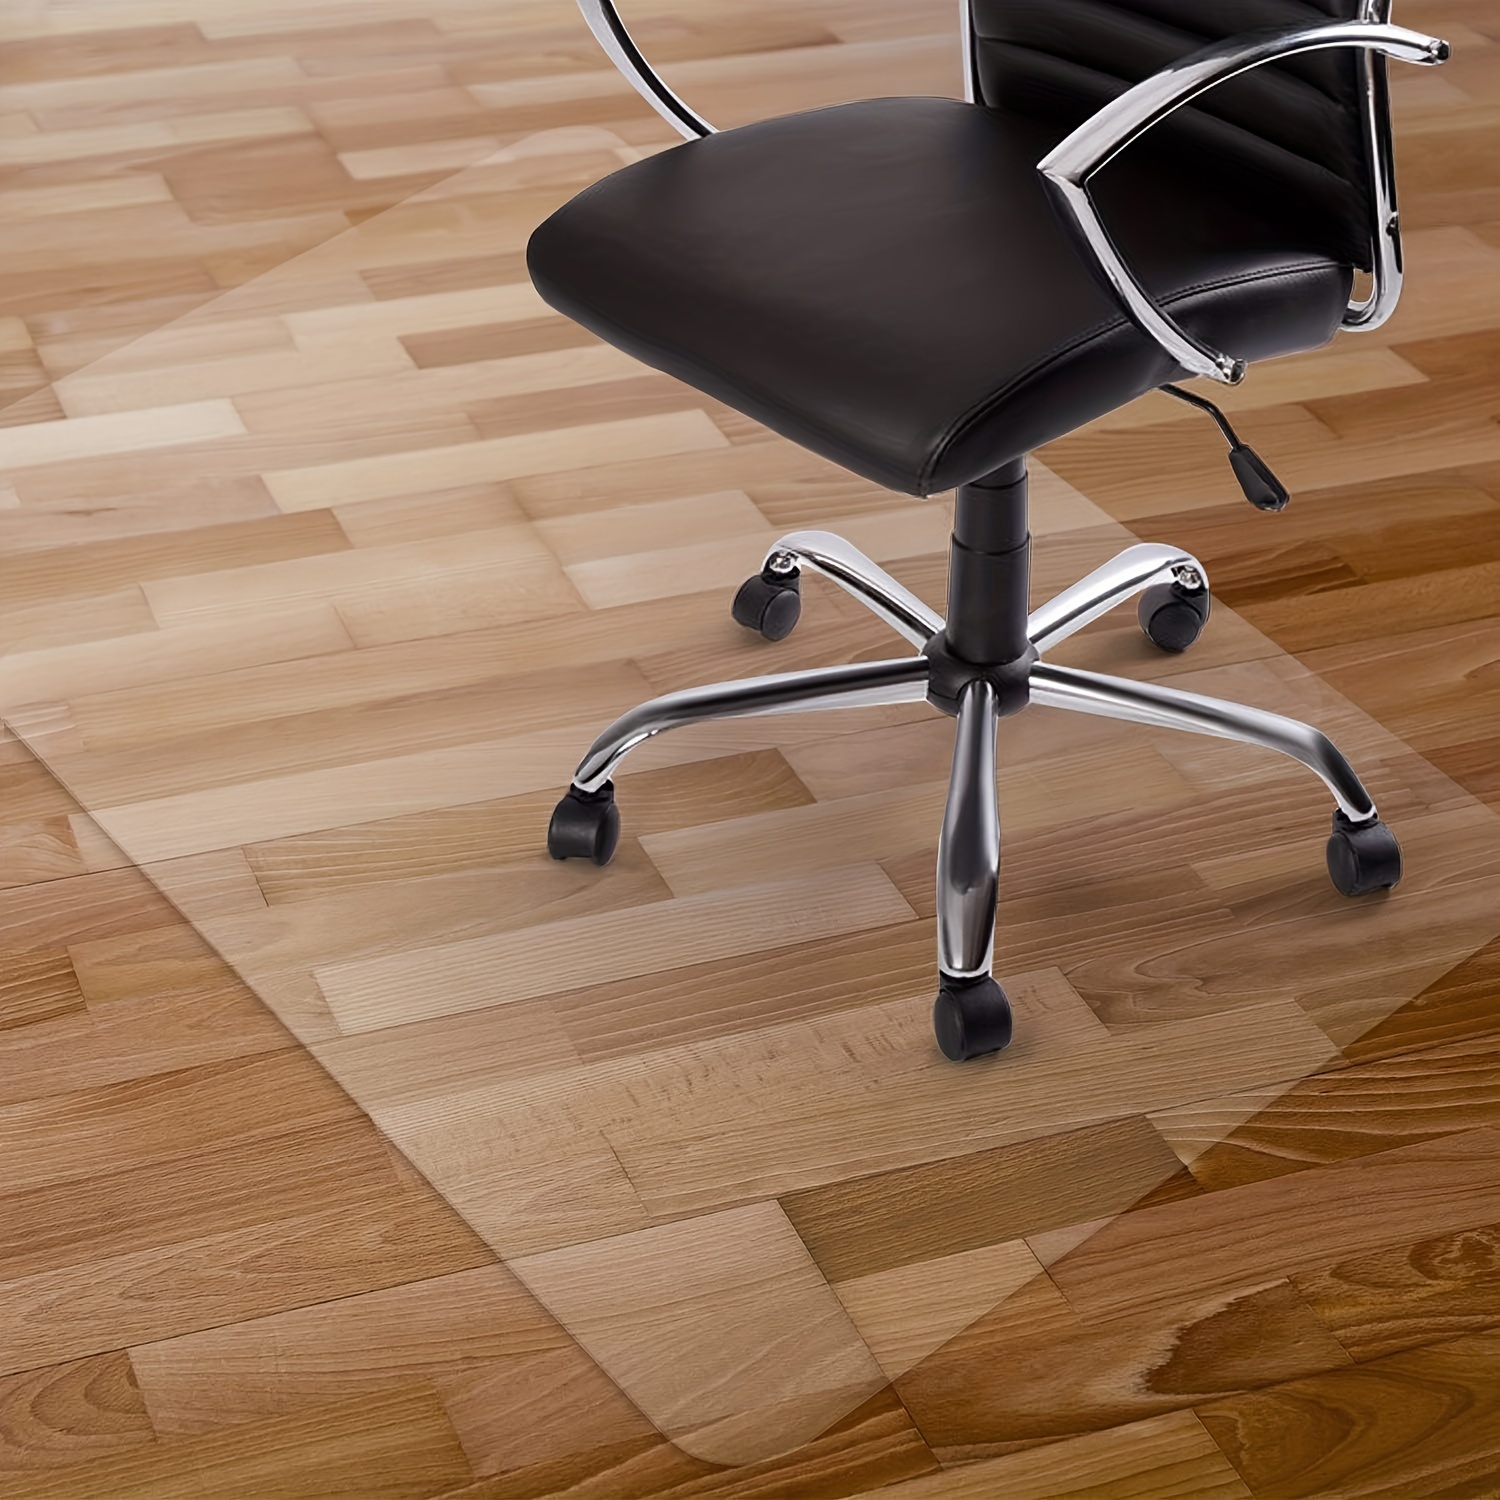  Camino de suelo de PVC transparente, protector de piso de  azulejos de madera dura para cocina, alfombra de pelo bajo/silla de  oficina, cubierta de plástico para entrada HD transparente, resistente al